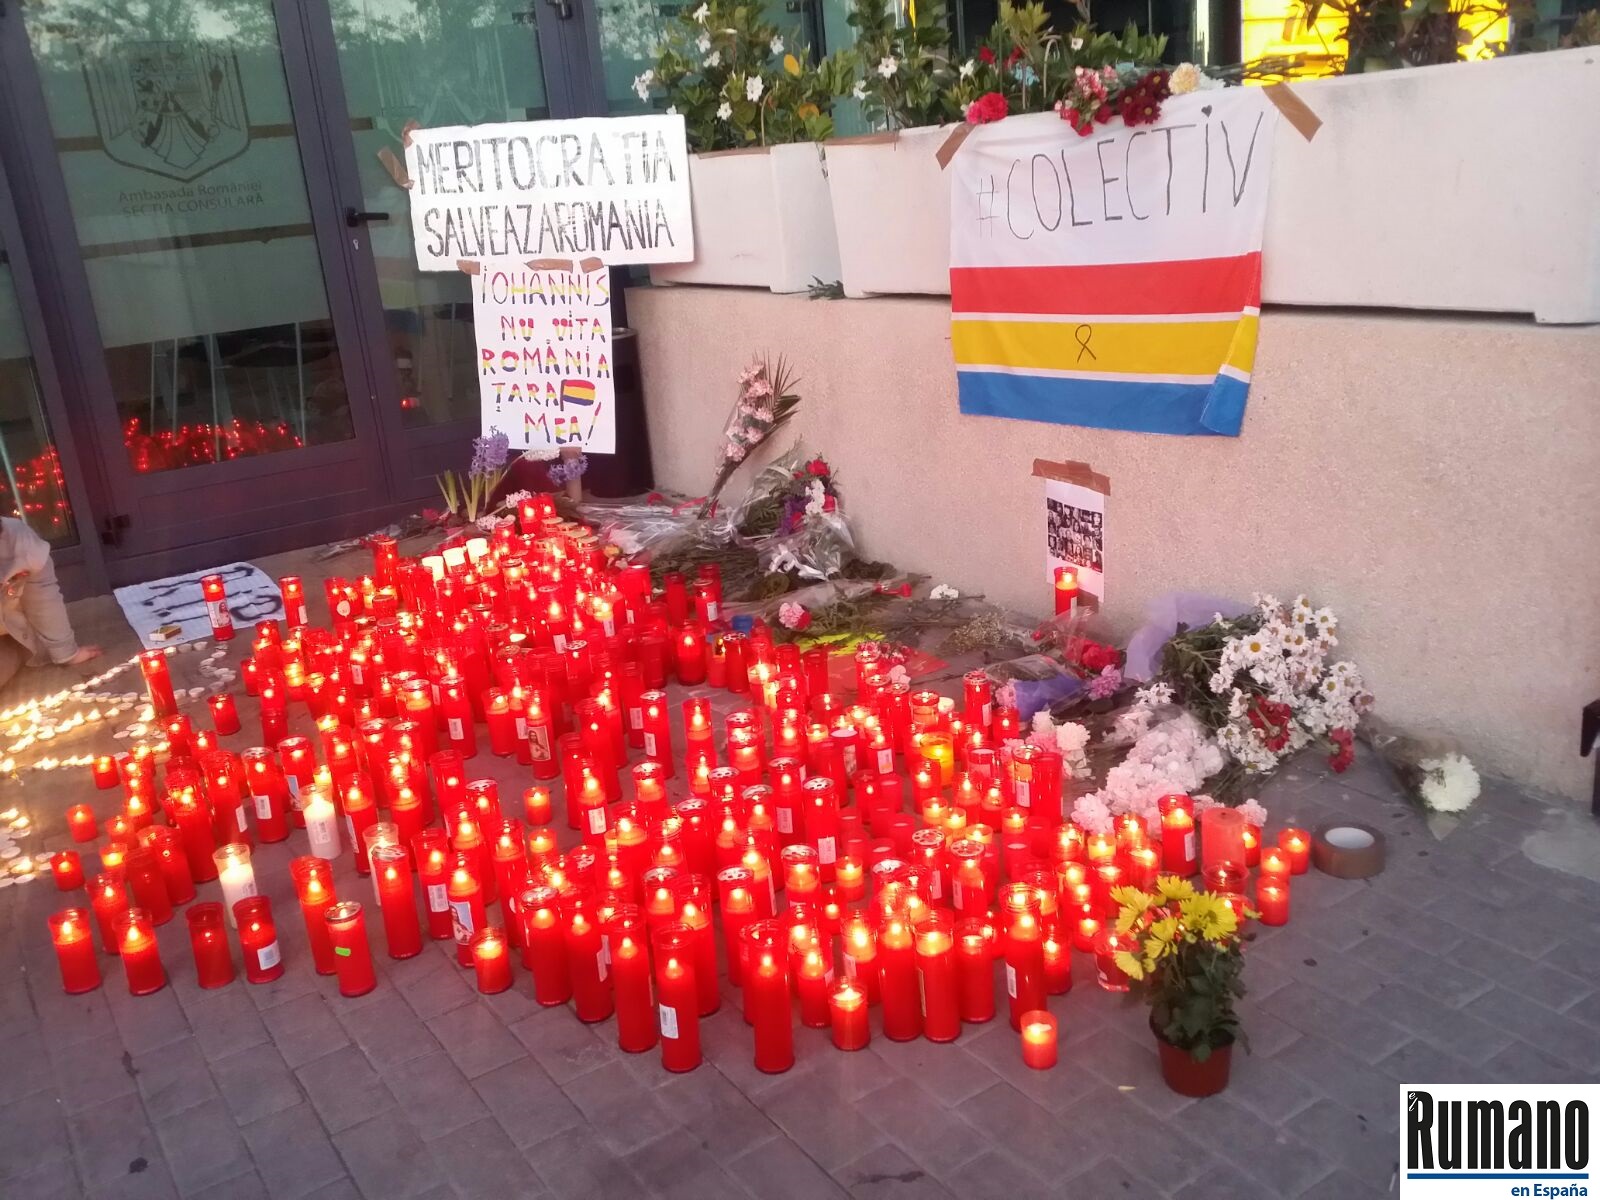 Protestele-continuă-la-Madrid-Românii-din-diaspora-alături-de-românii-din-țară